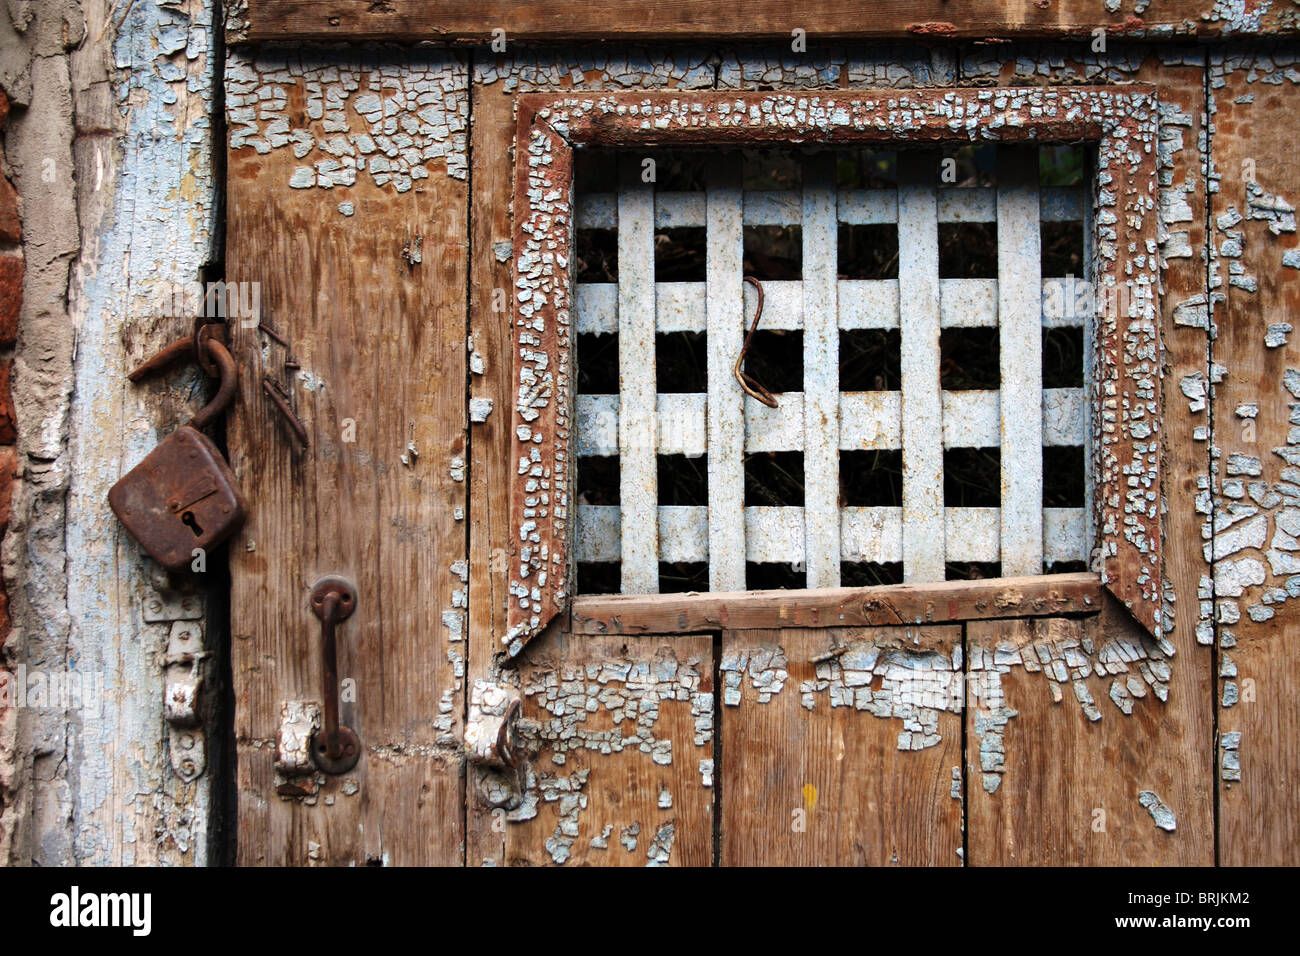 Antigua puerta de madera desgastada con barras en la ventana Foto de stock